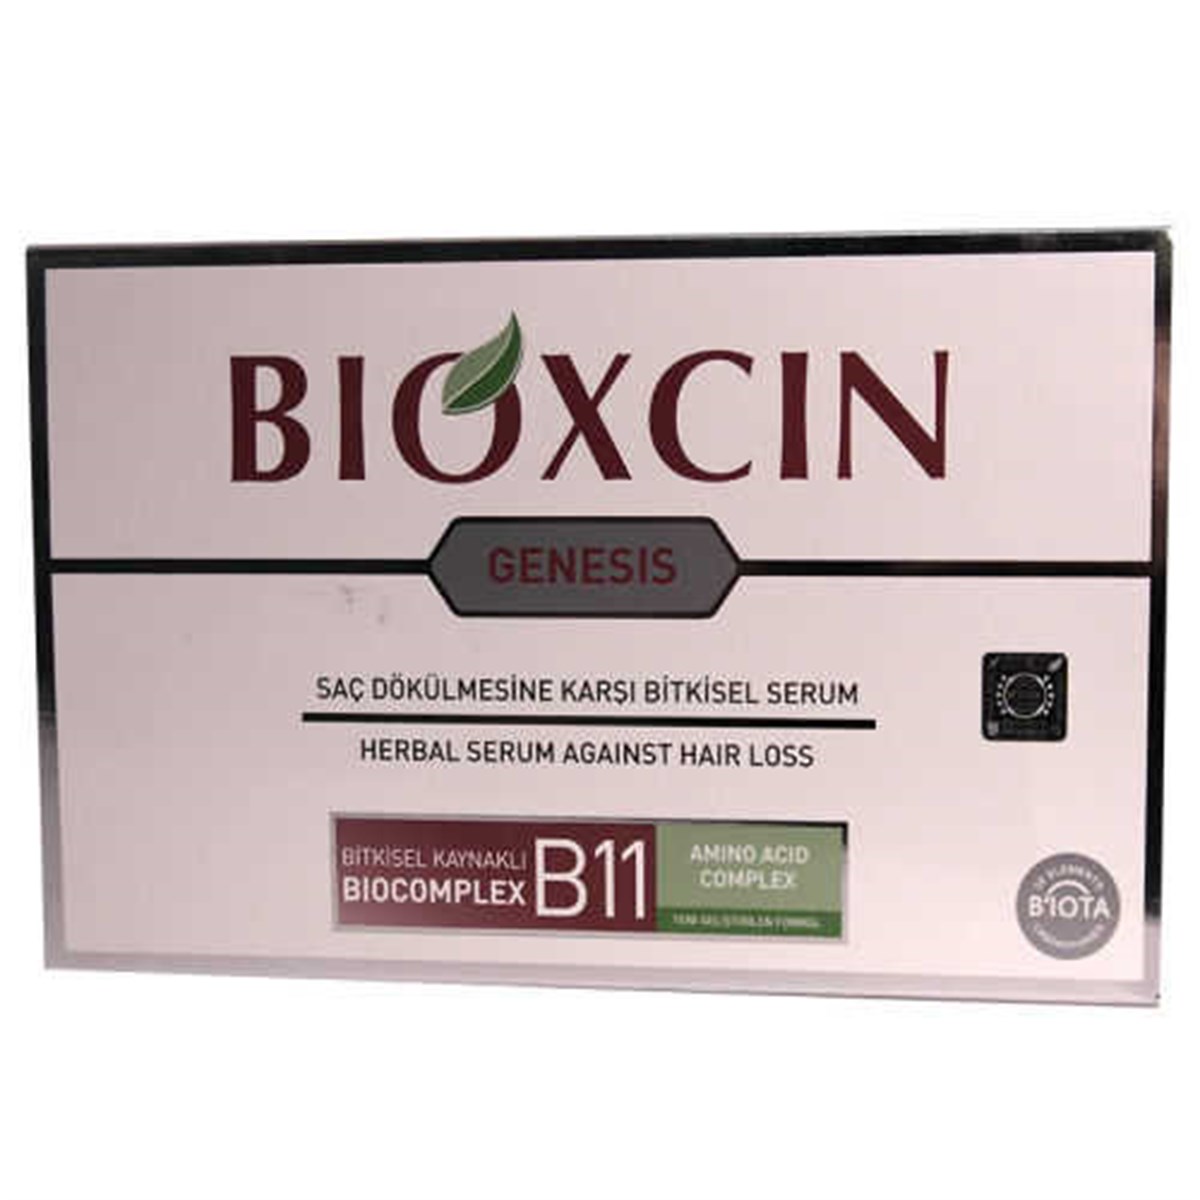 Bioxcin Genesis Saç Dökülmesine Karşı Bitkisel Serum Fiyatları |  Dermosiparis.com